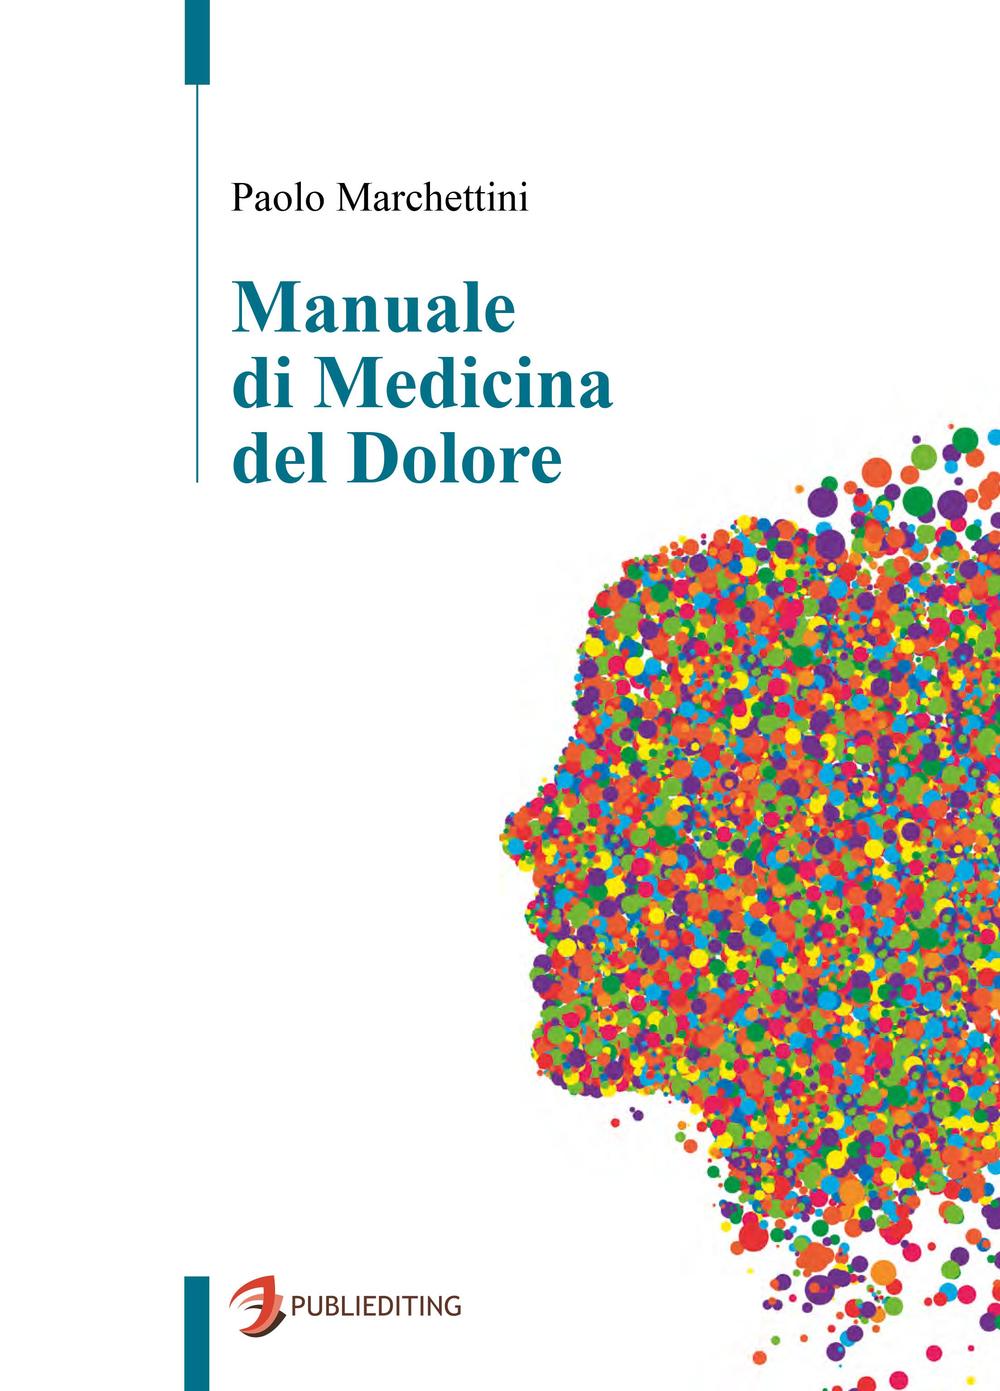 Книга Manuale di medicina del dolore Paolo Marchettini